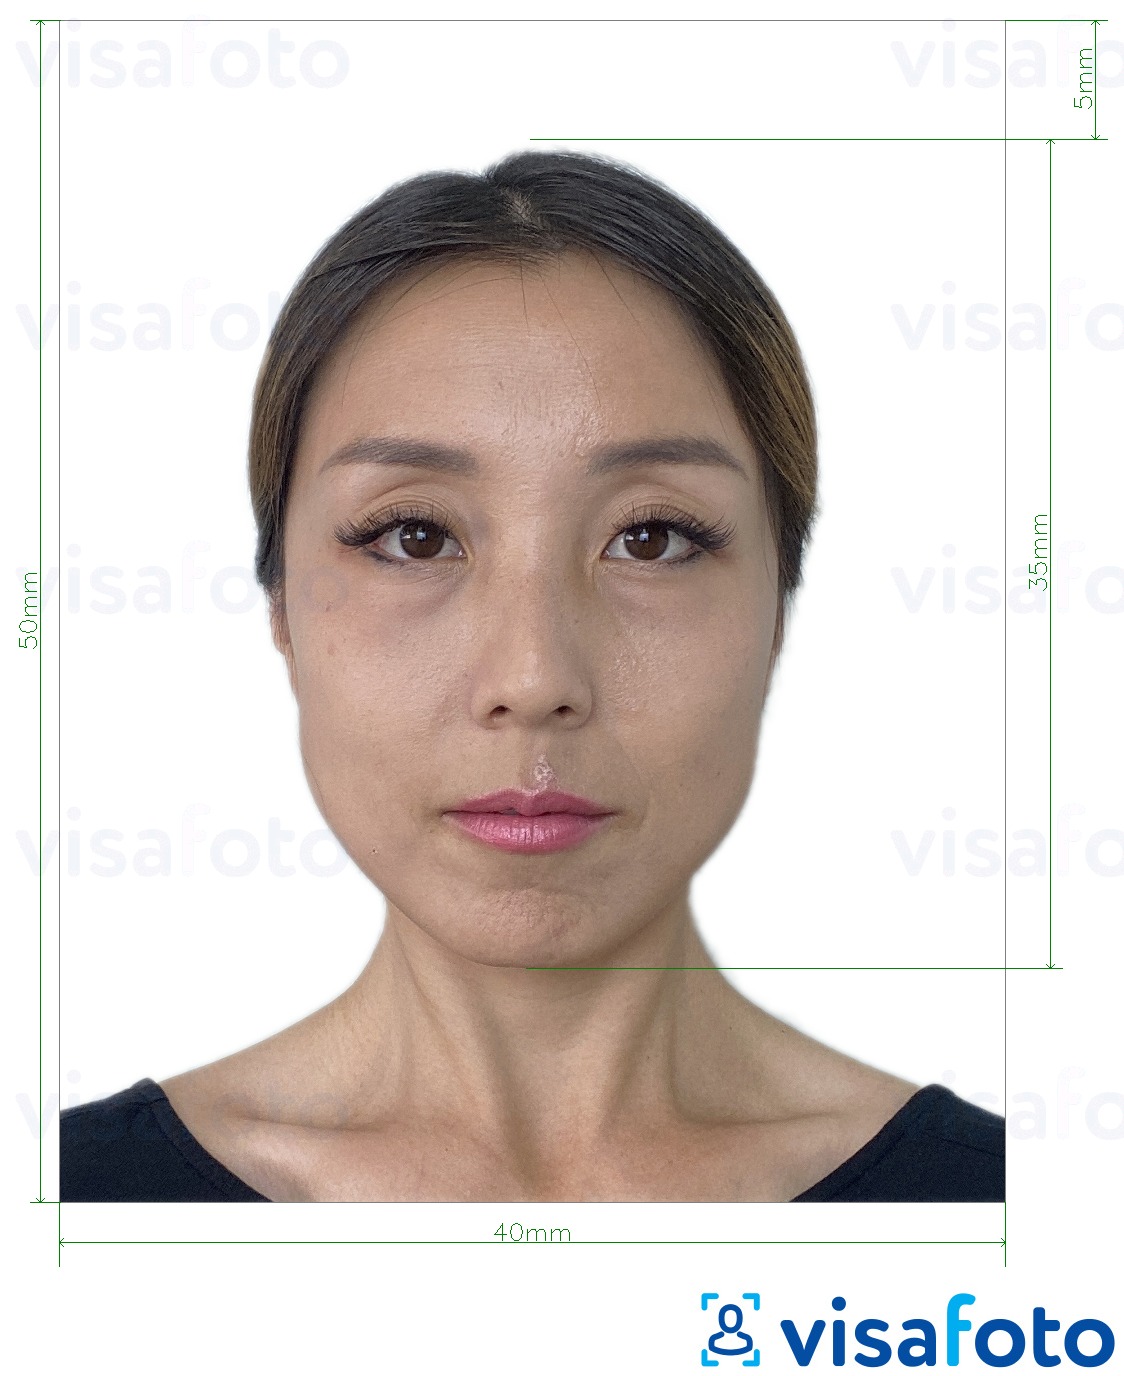 정확한 사이즈 크기의 홍콩 여권 40x50 mm (4x5cm) 사진의 예